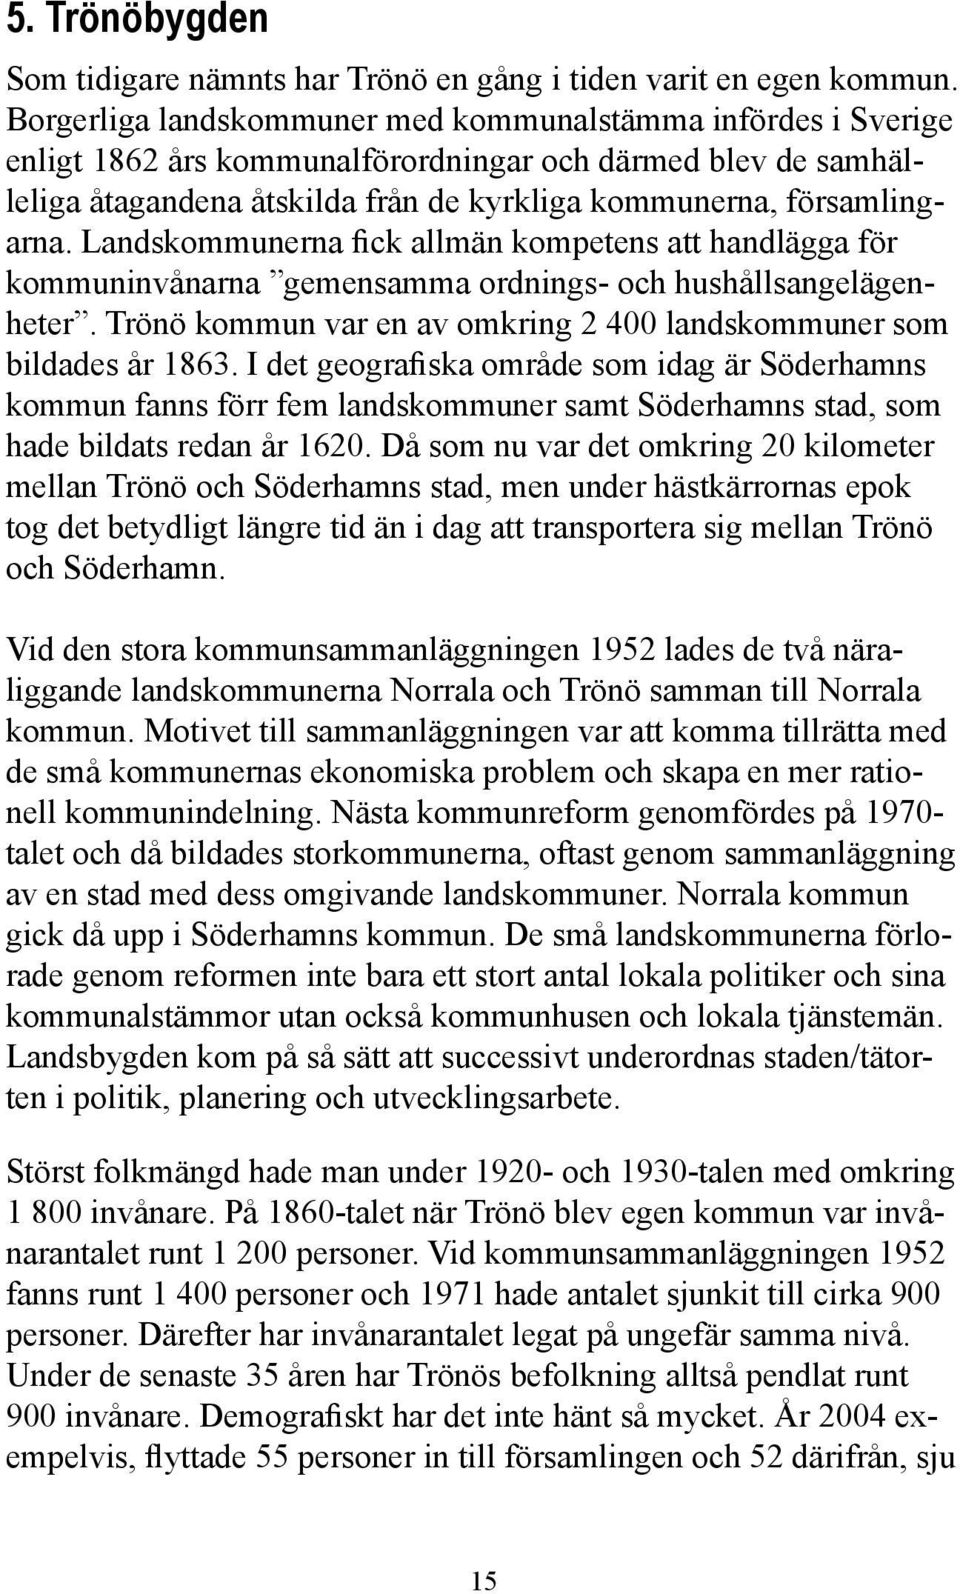 Landskommunerna fick allmän kompetens att handlägga för kommuninvånarna gemensamma ordnings- och hushållsangelägenheter. Trönö kommun var en av omkring 2 400 landskommuner som bildades år 1863.